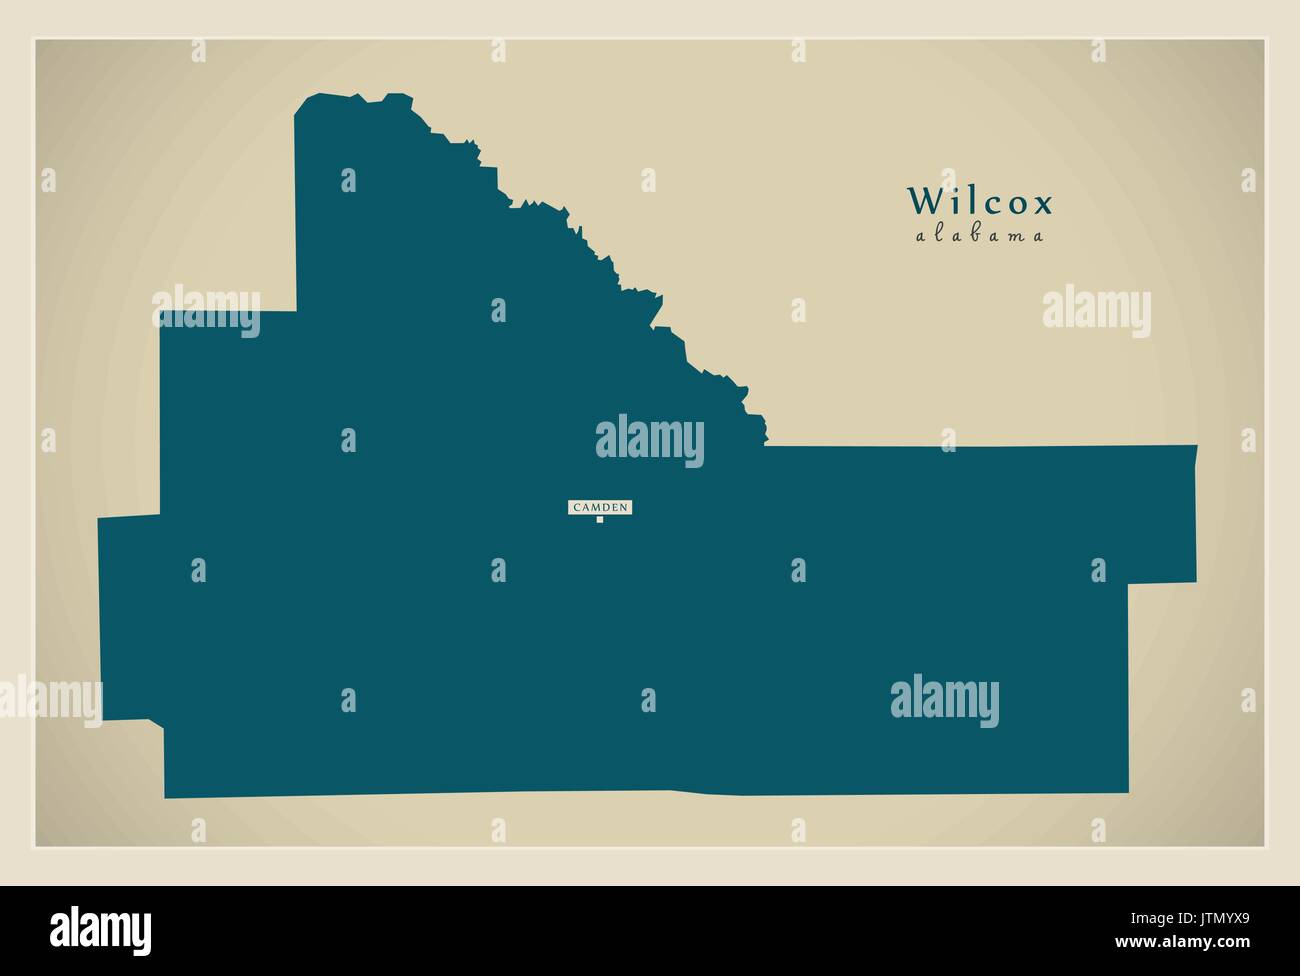 Mappa moderno - Wilcox Alabama county USA illustrazione Illustrazione Vettoriale